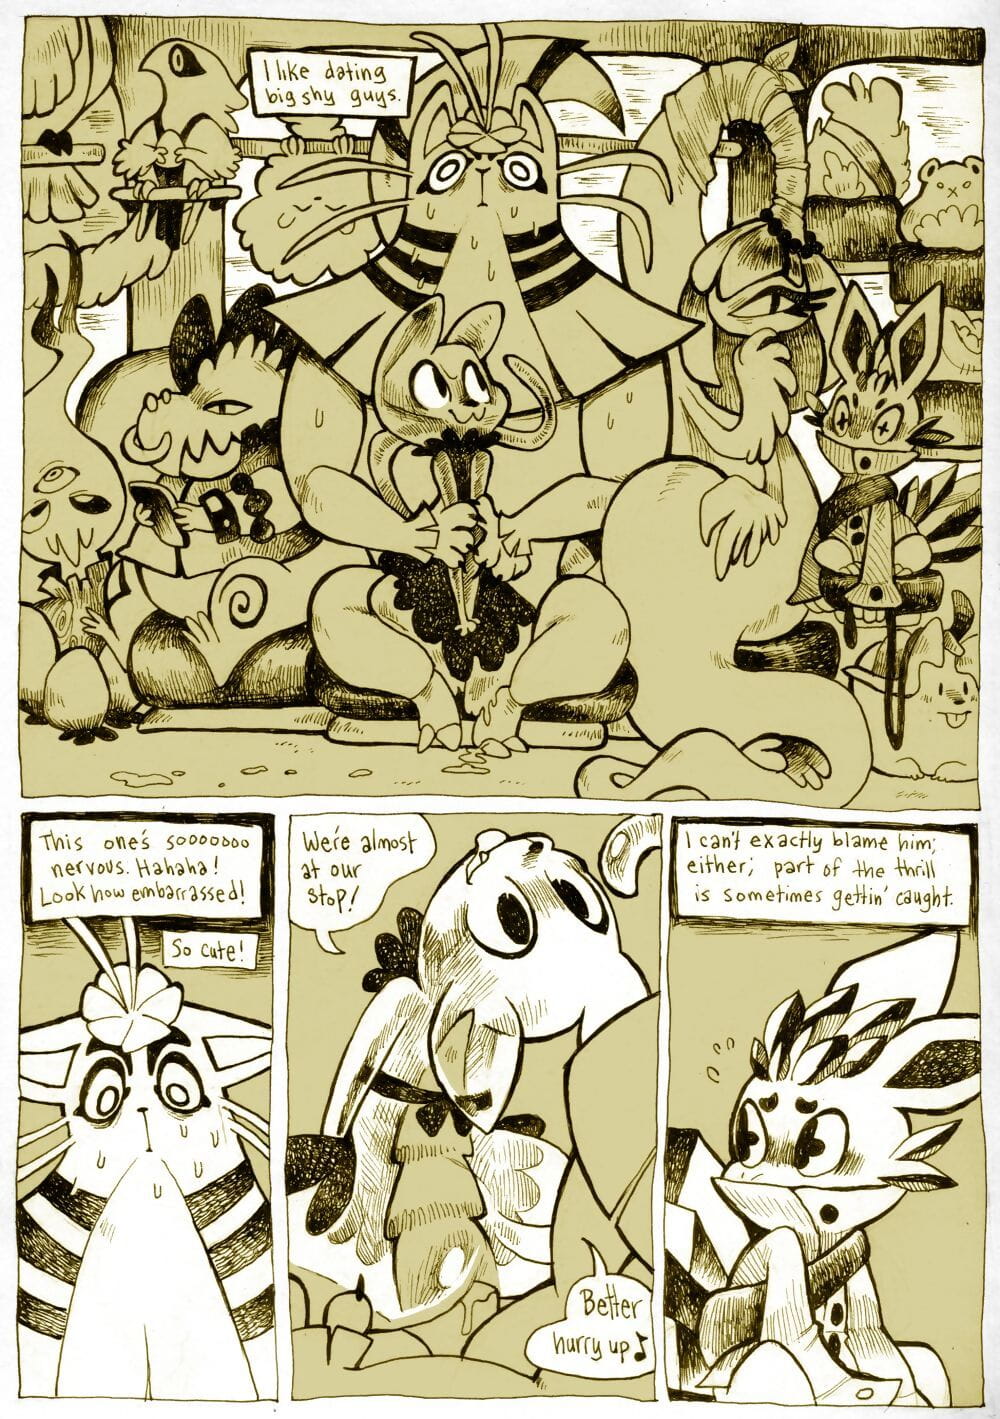 miscelánea comics page 1